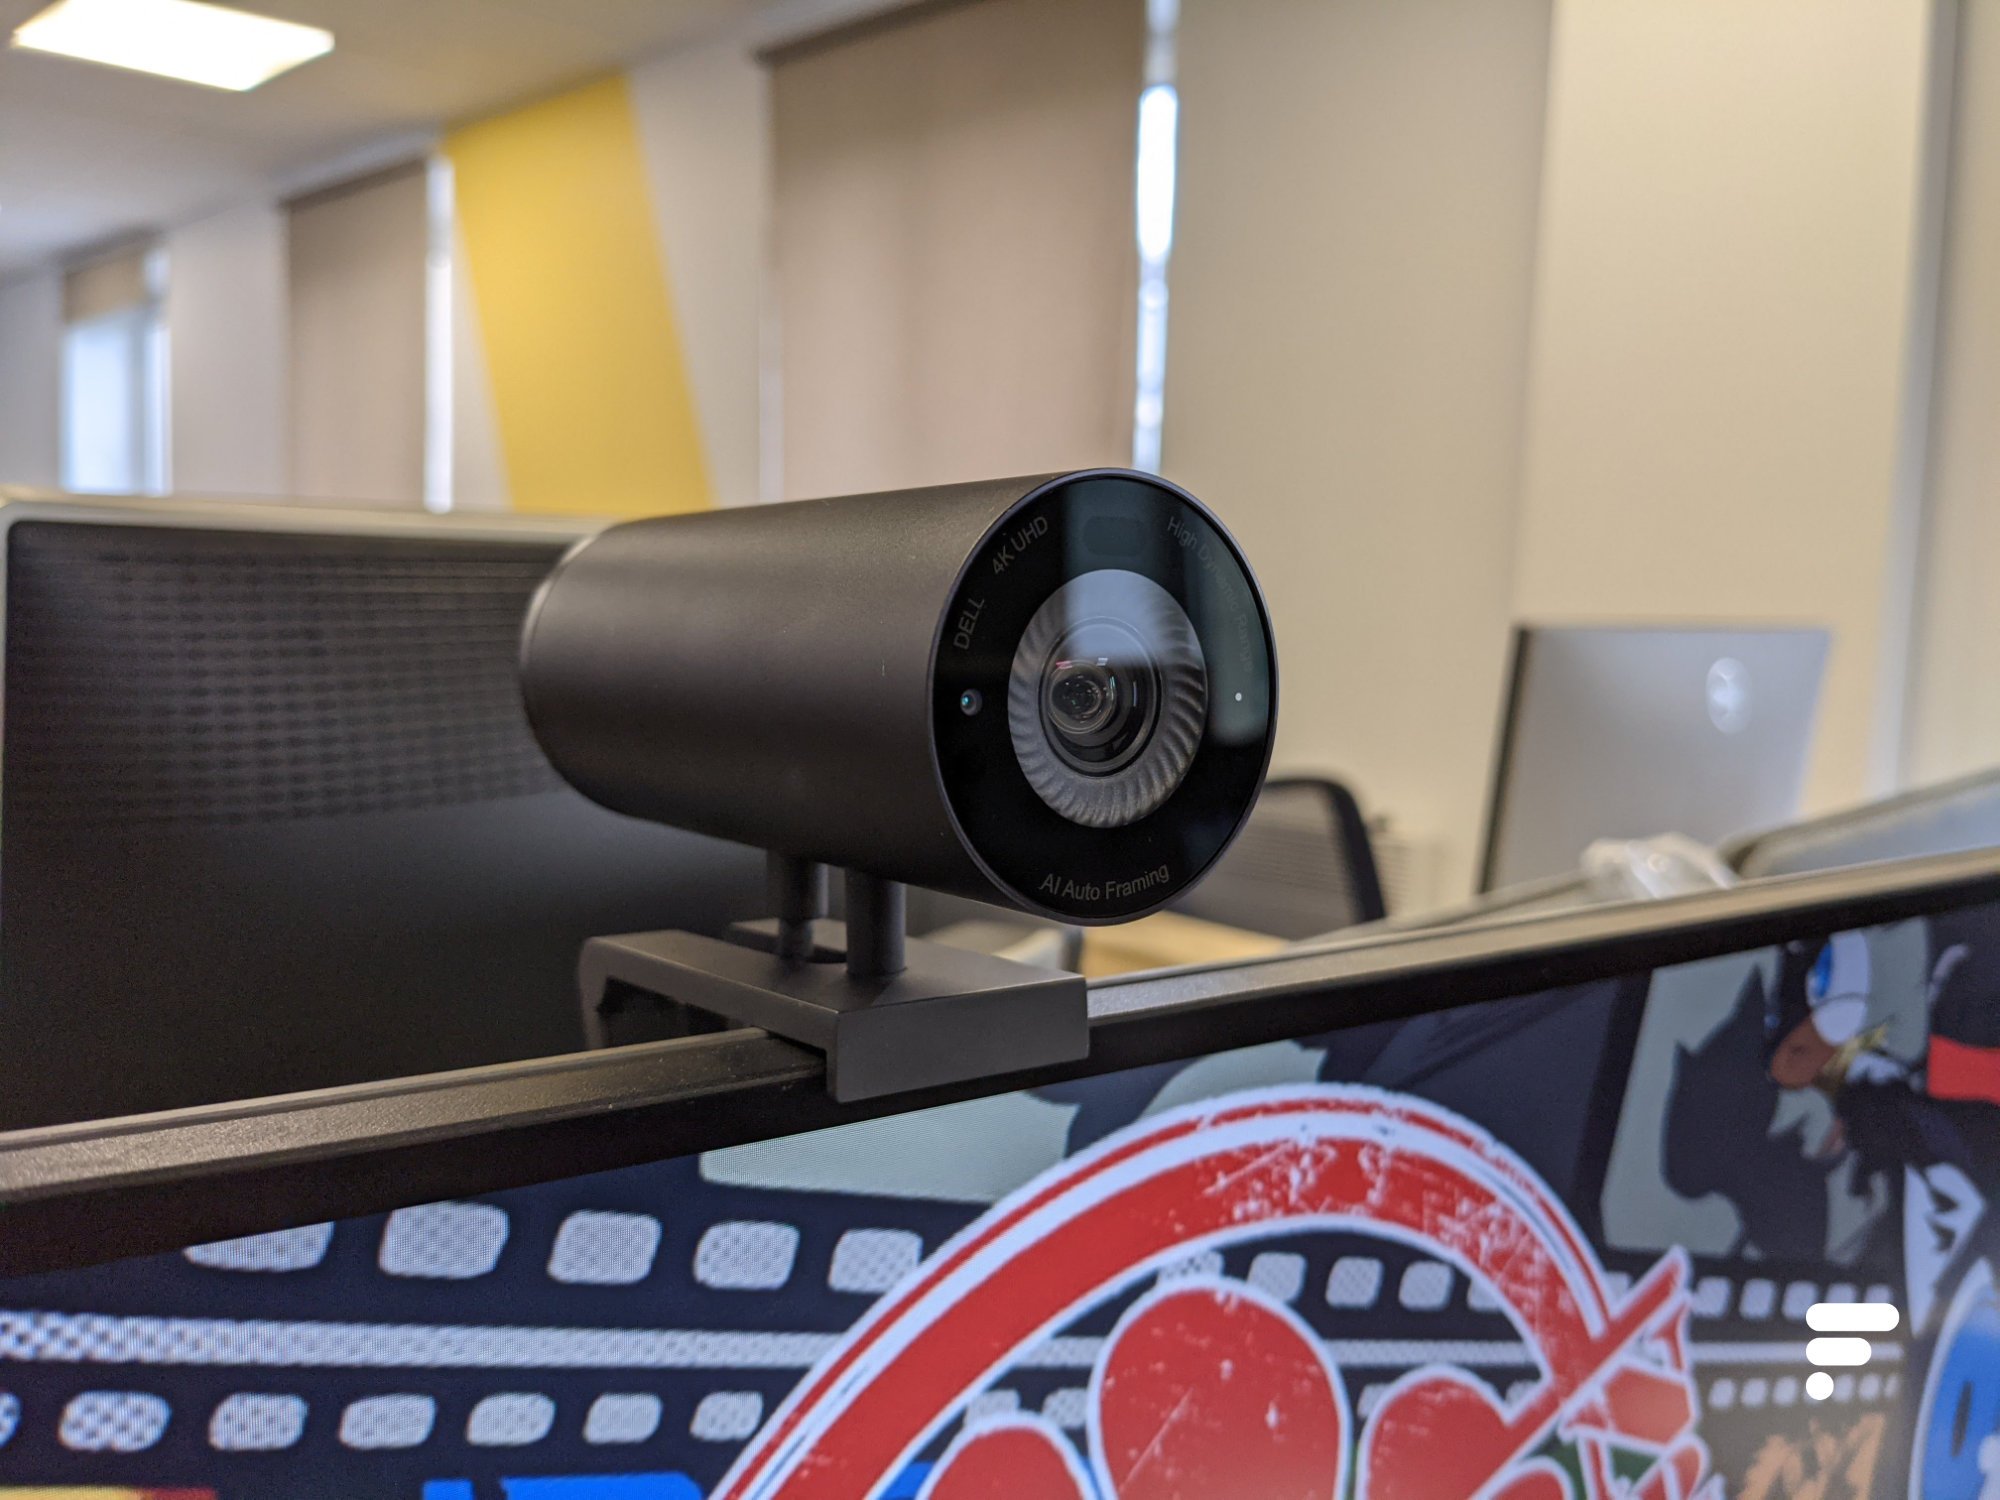 Webcam Dell UltraSharp et casque sans fil antibruit Premier (WB7022 et  WL7022)